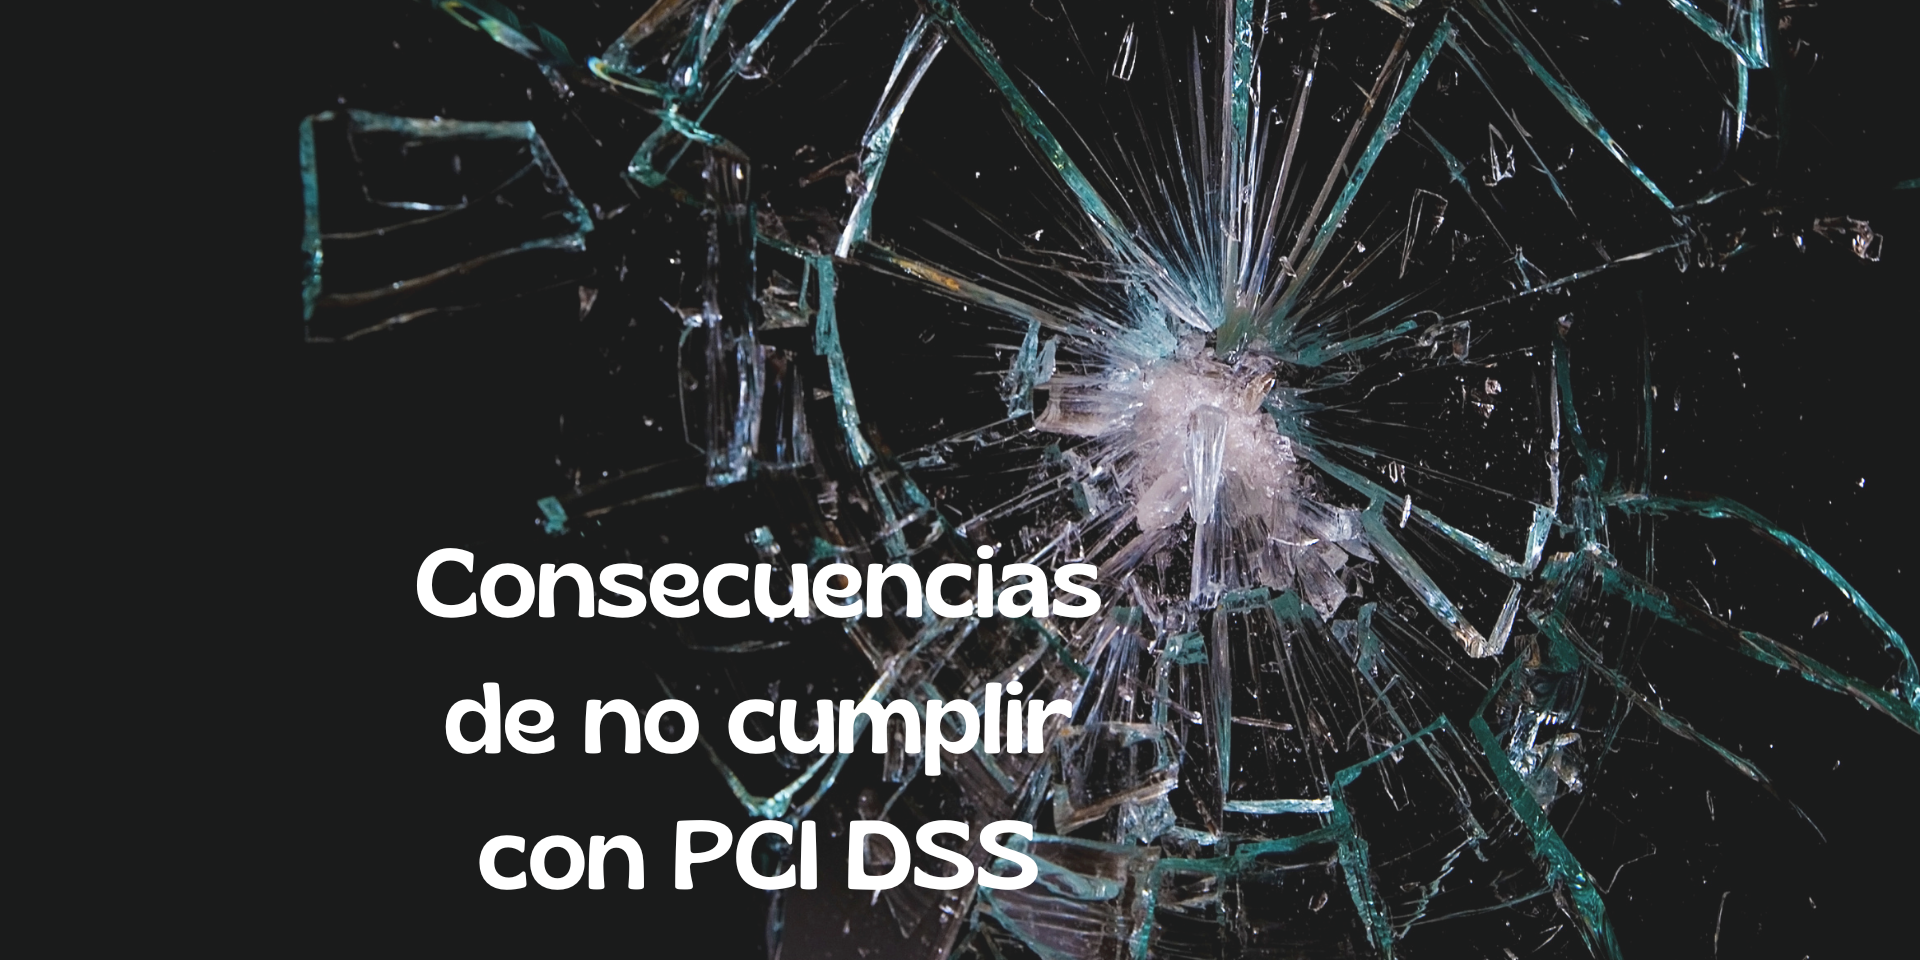 Consecuencias de no cumplir con PCI DSS